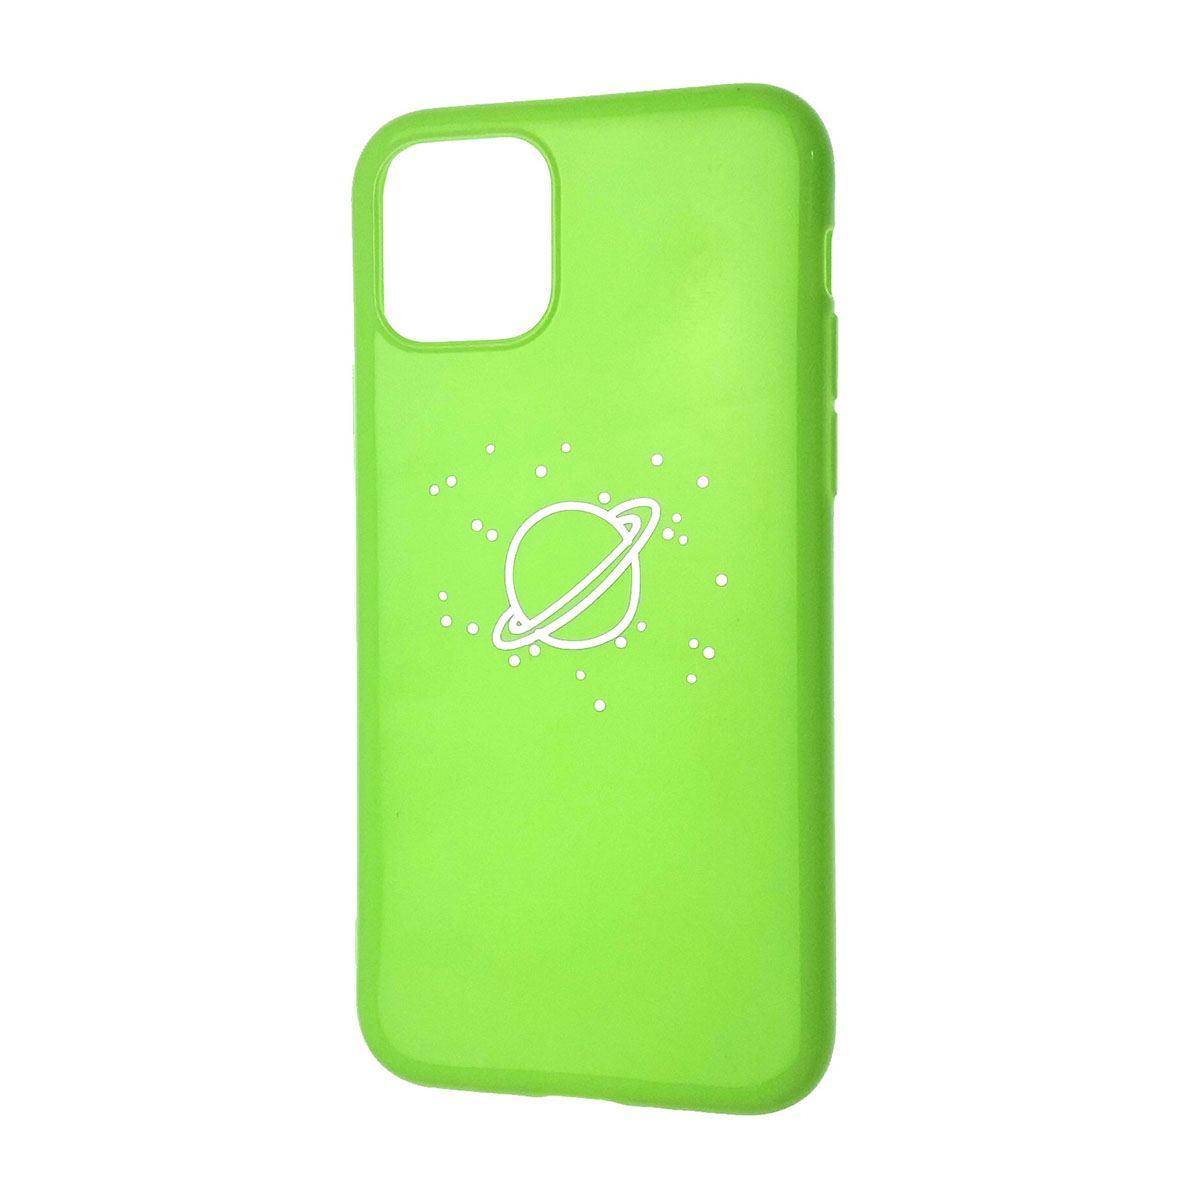 Чехол накладка для APPLE iPhone 11 Pro, силикон, матовый, рисунок Глобус, цвет зеленый.